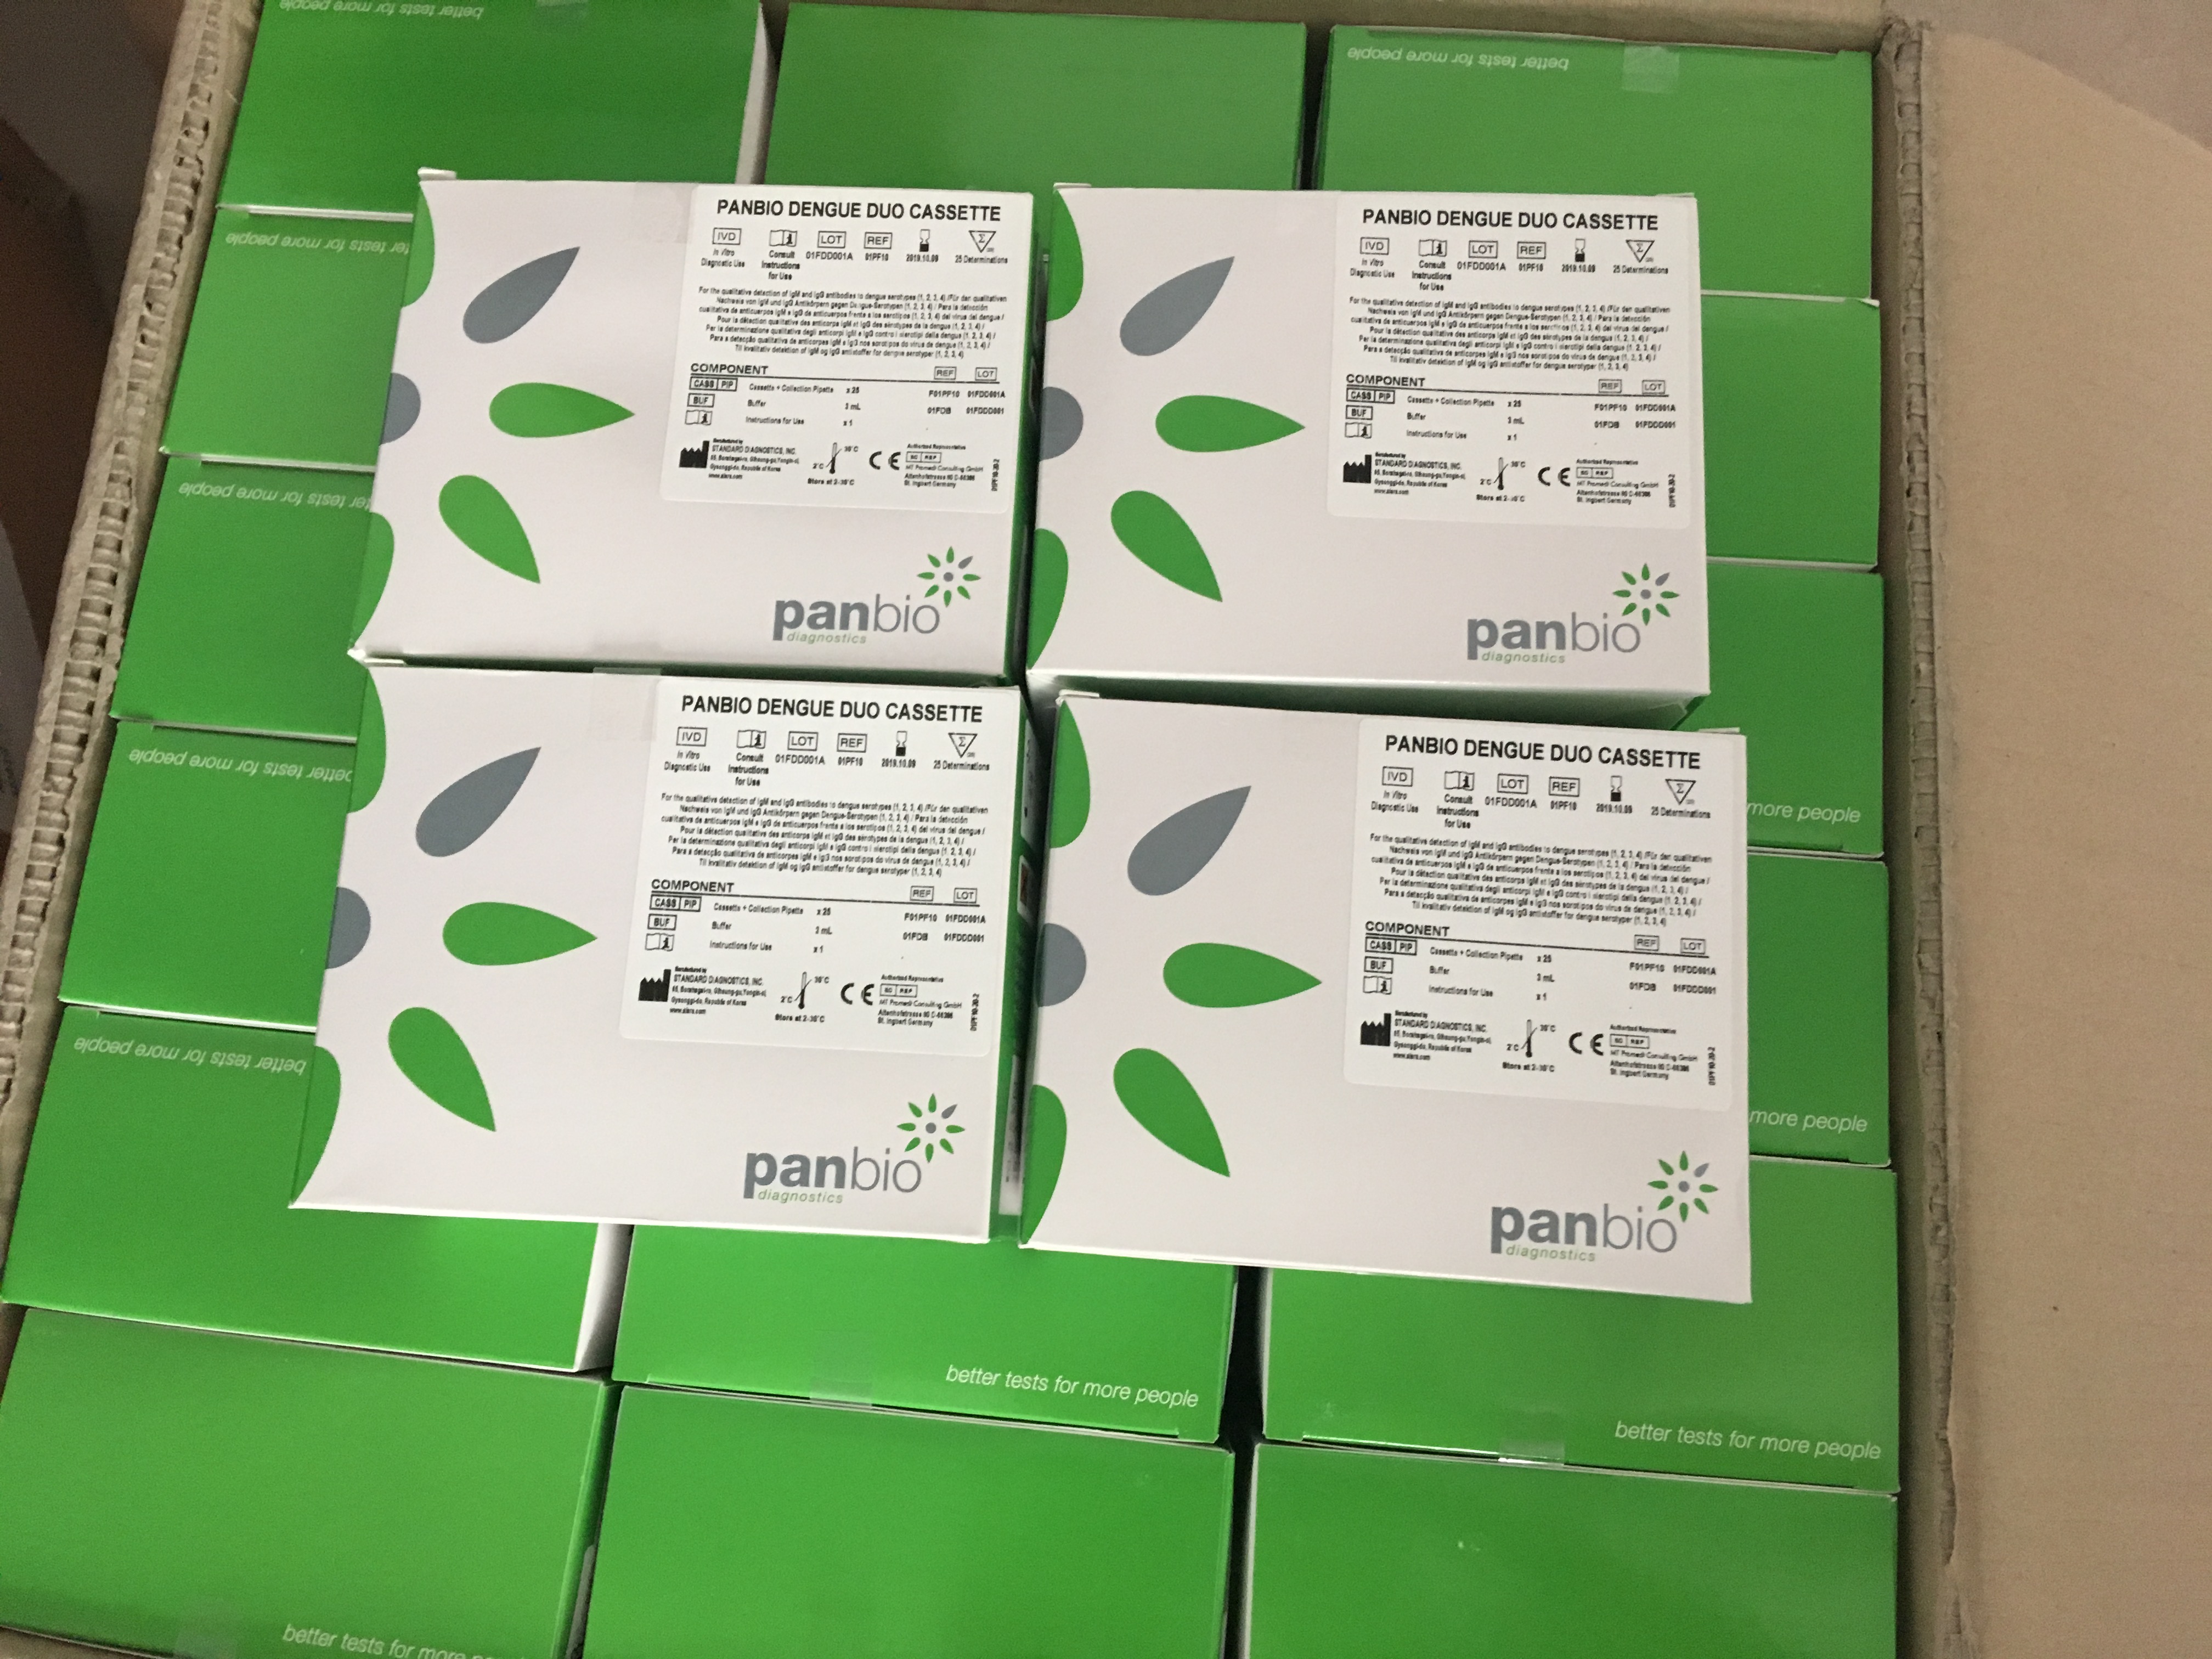 PANBIO登革热早期检测试剂